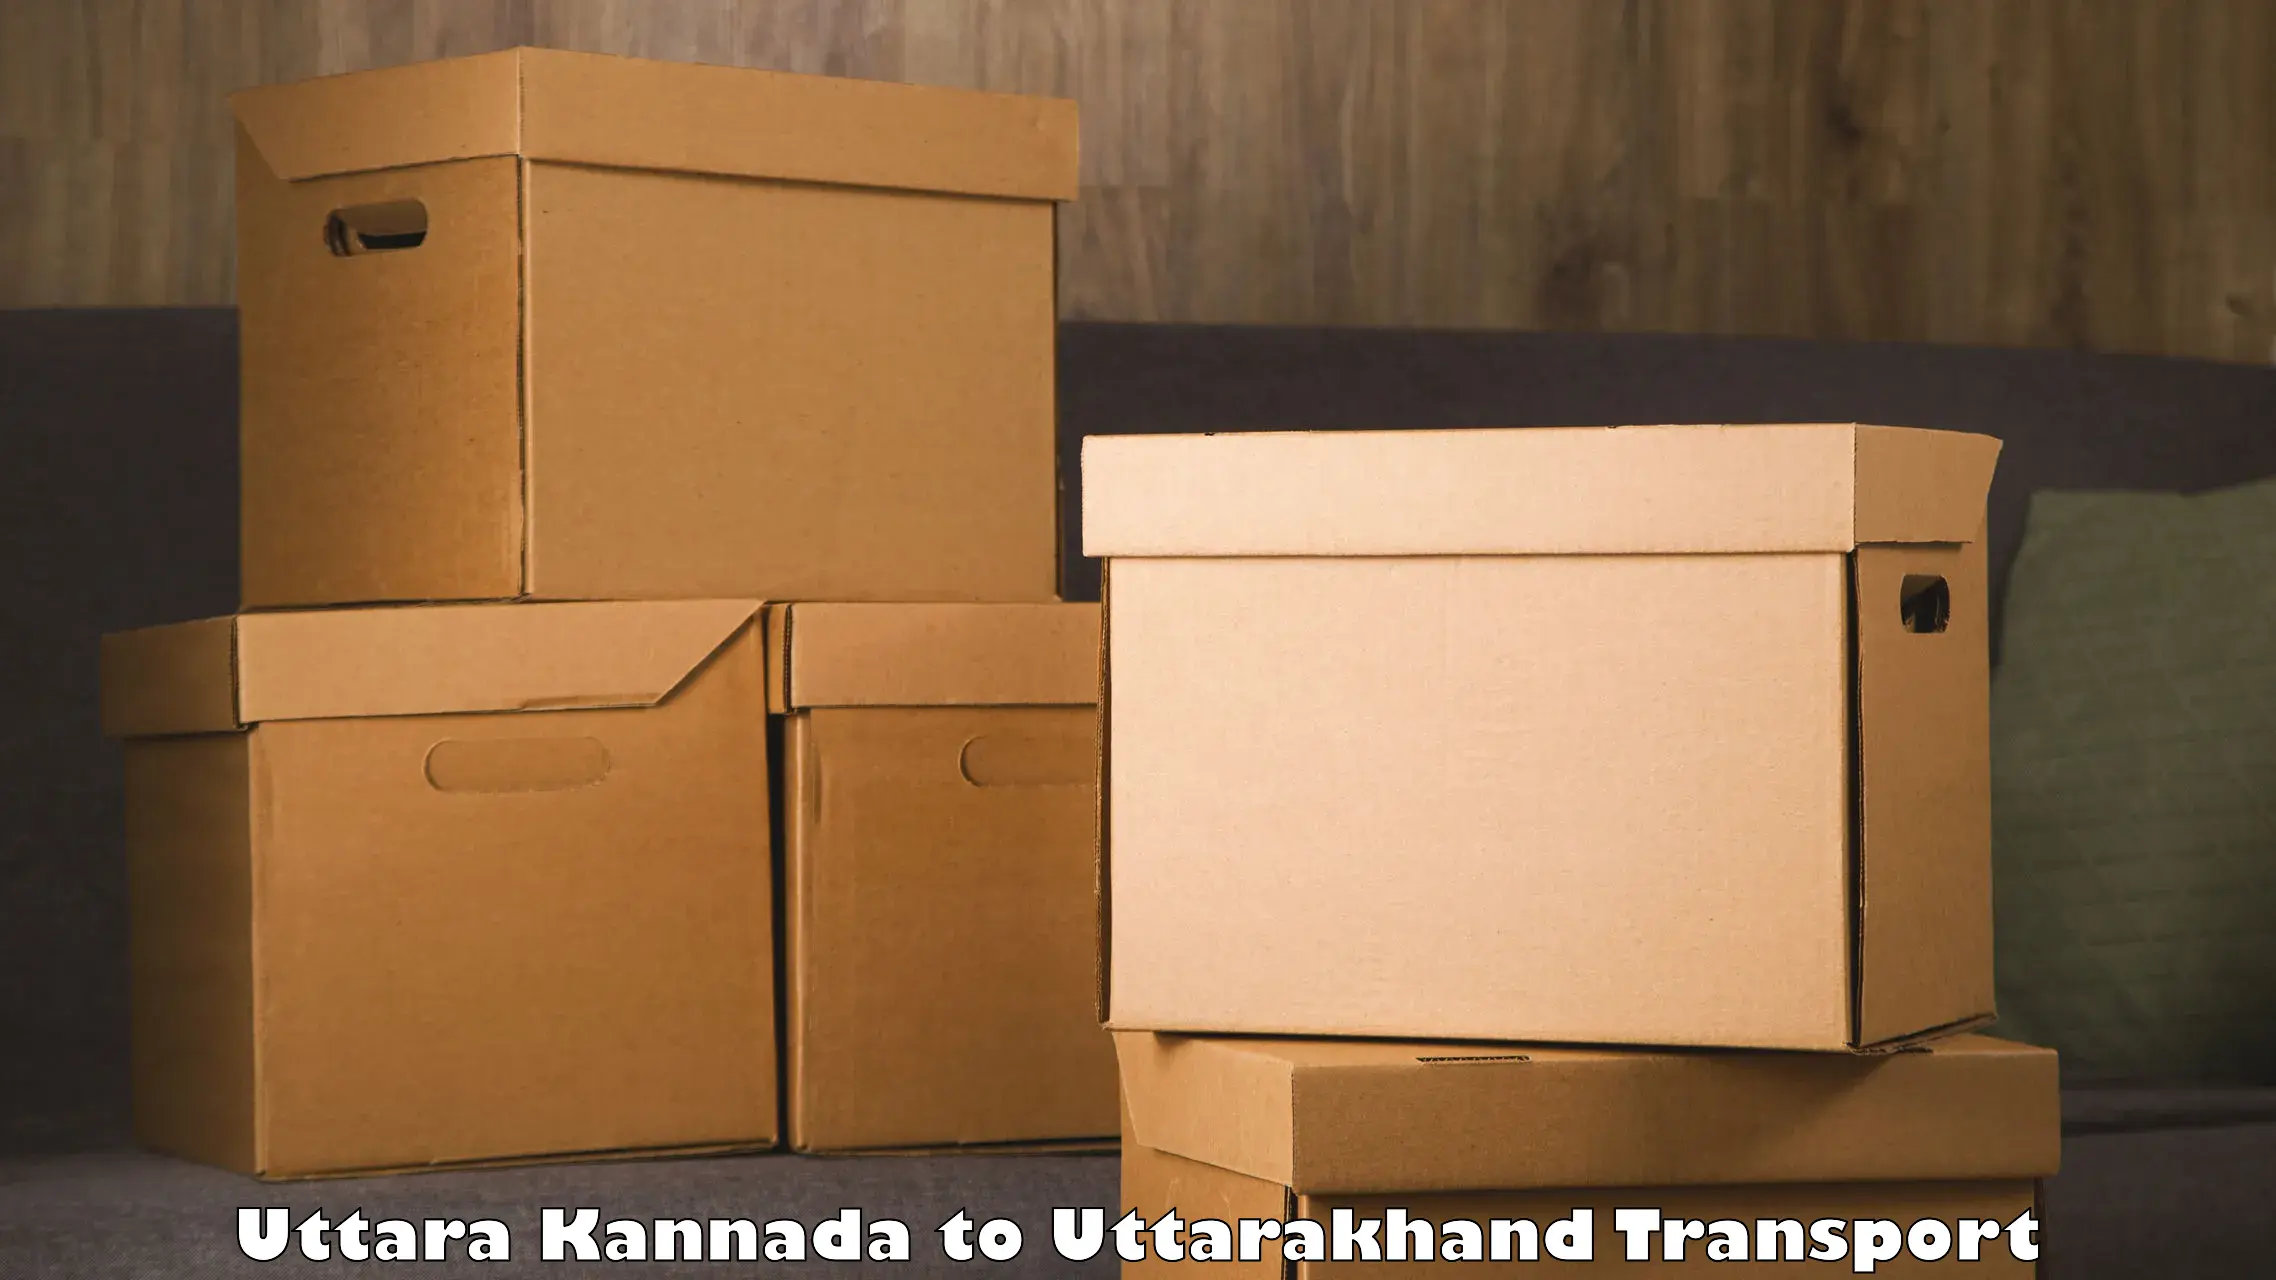 Container transport service Uttara Kannada to Paithani